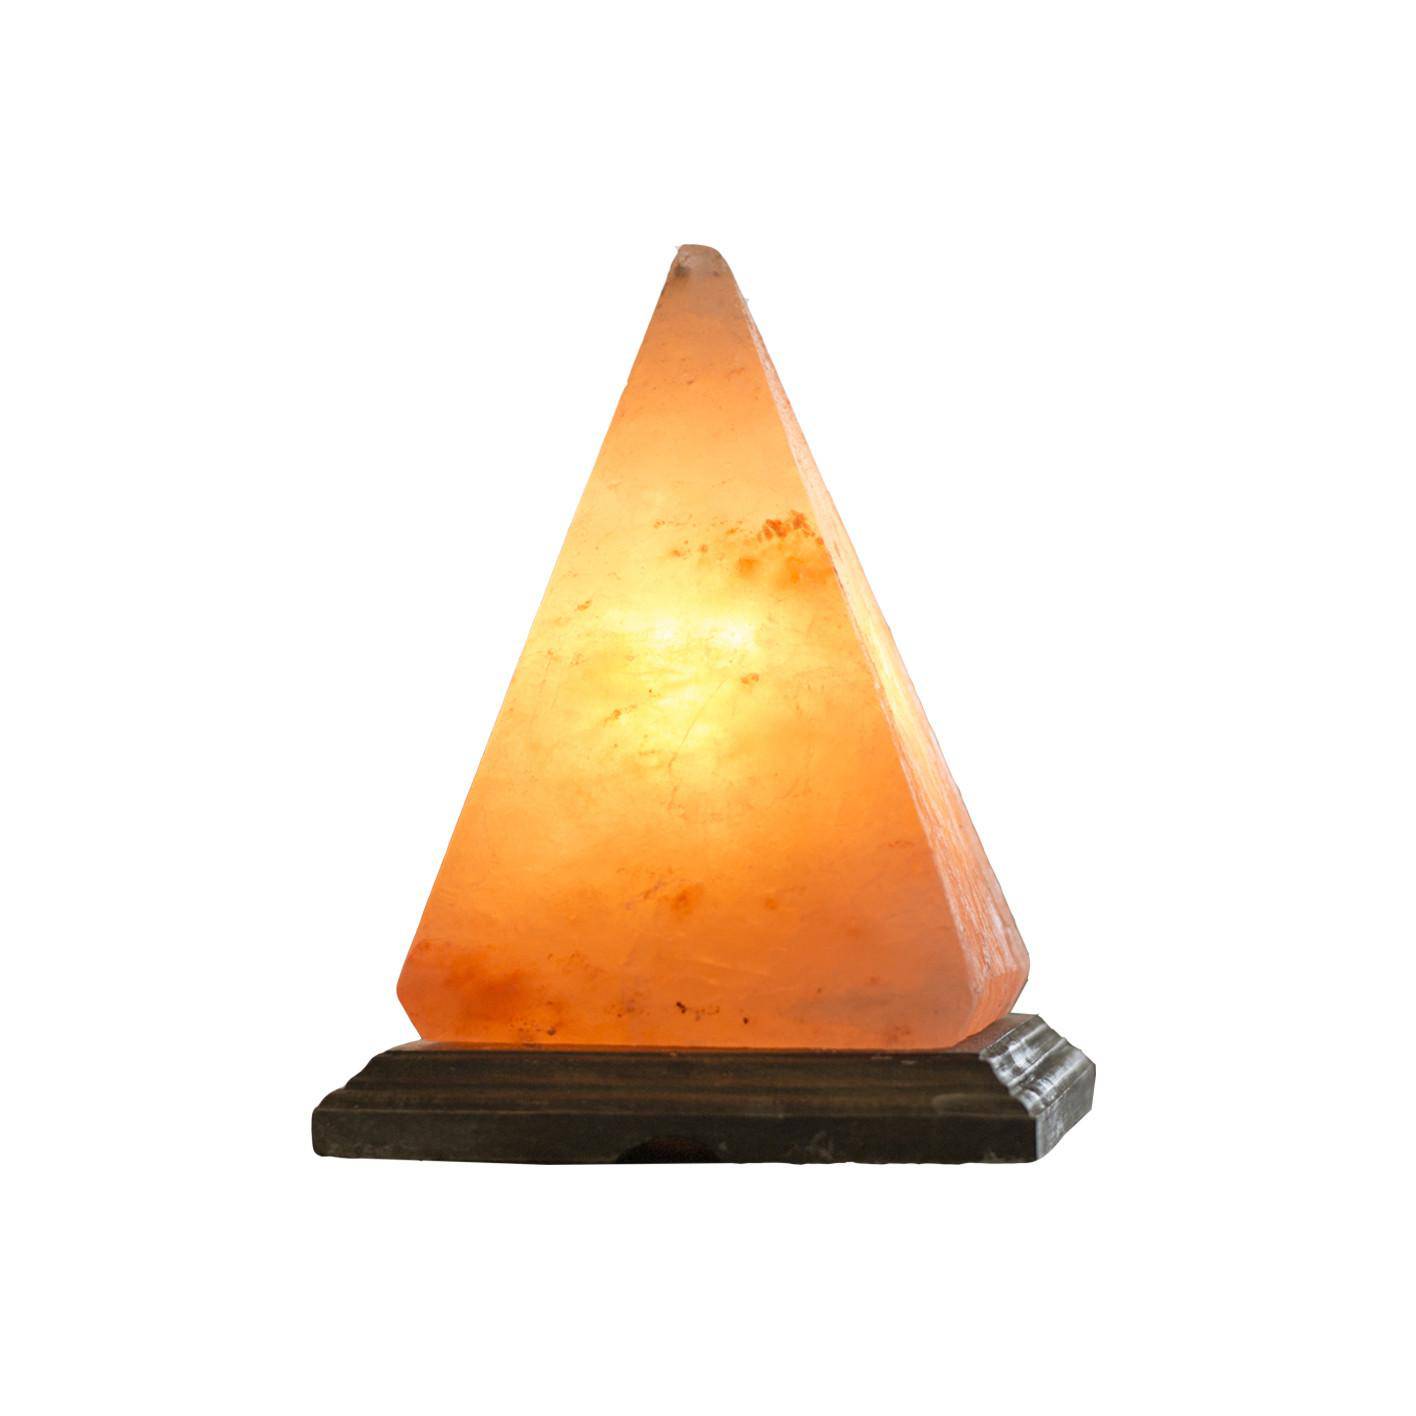 Lampa de sare Piramida Dr.Salt